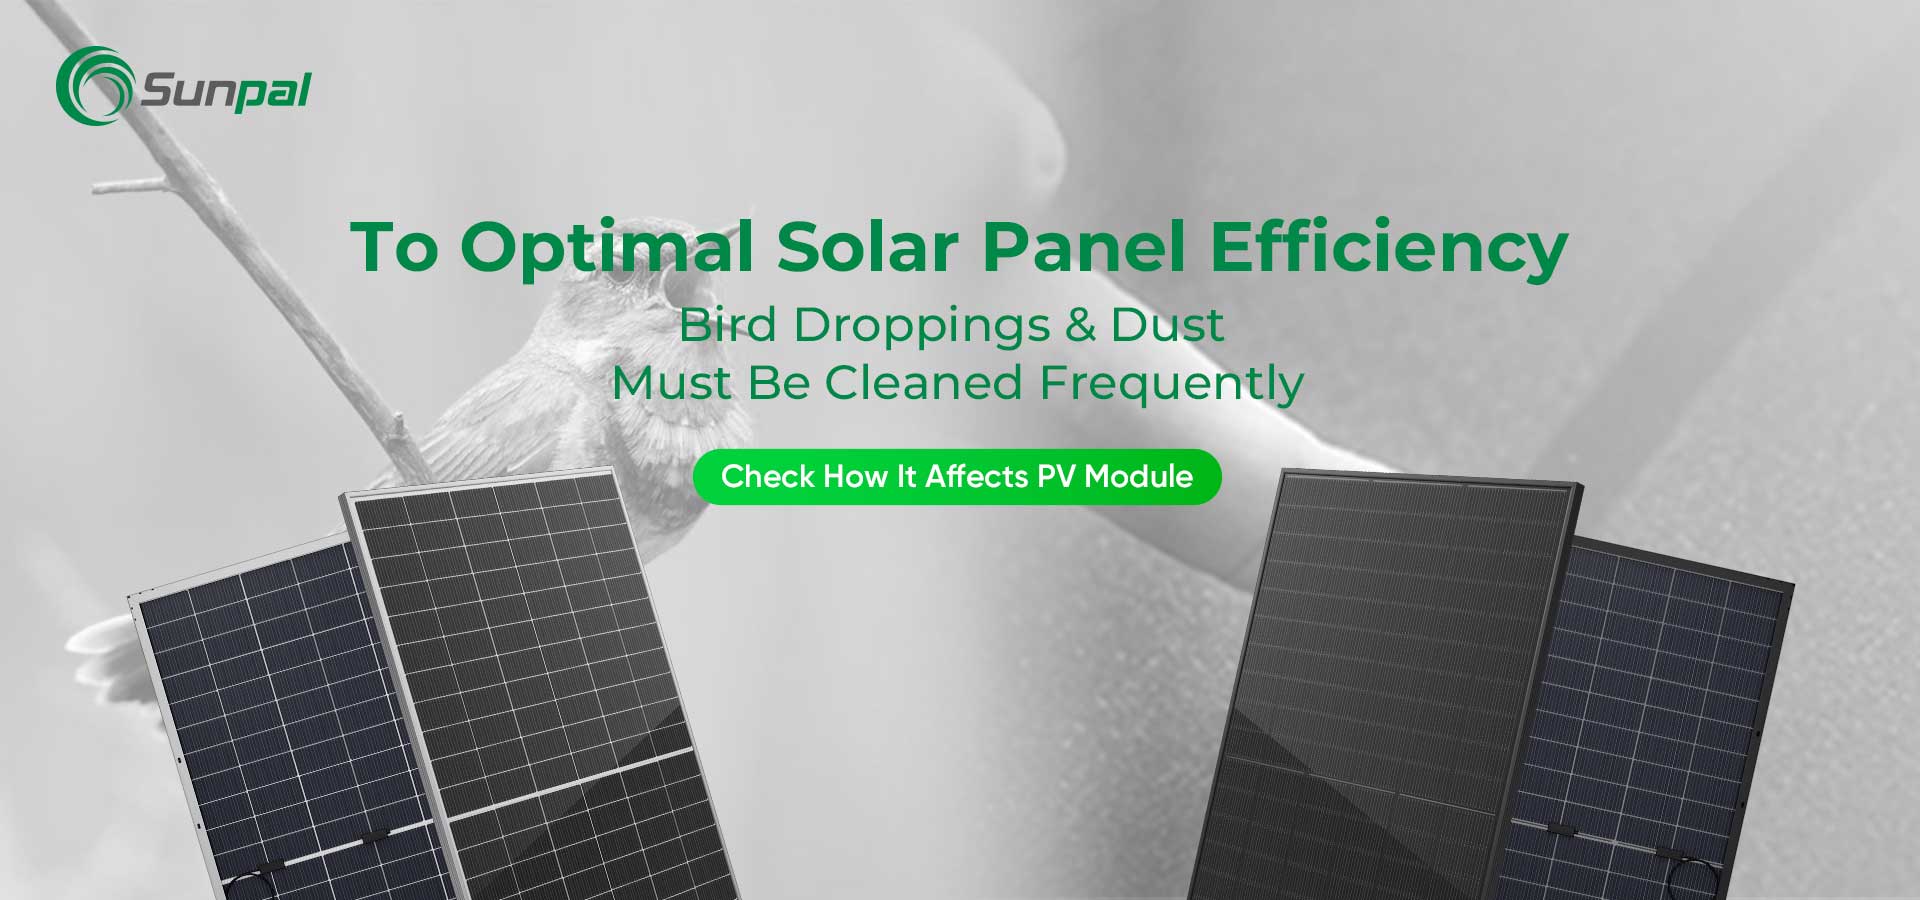 Staub und Vogelkot: Reinigung für optimale Solarmodulleistung